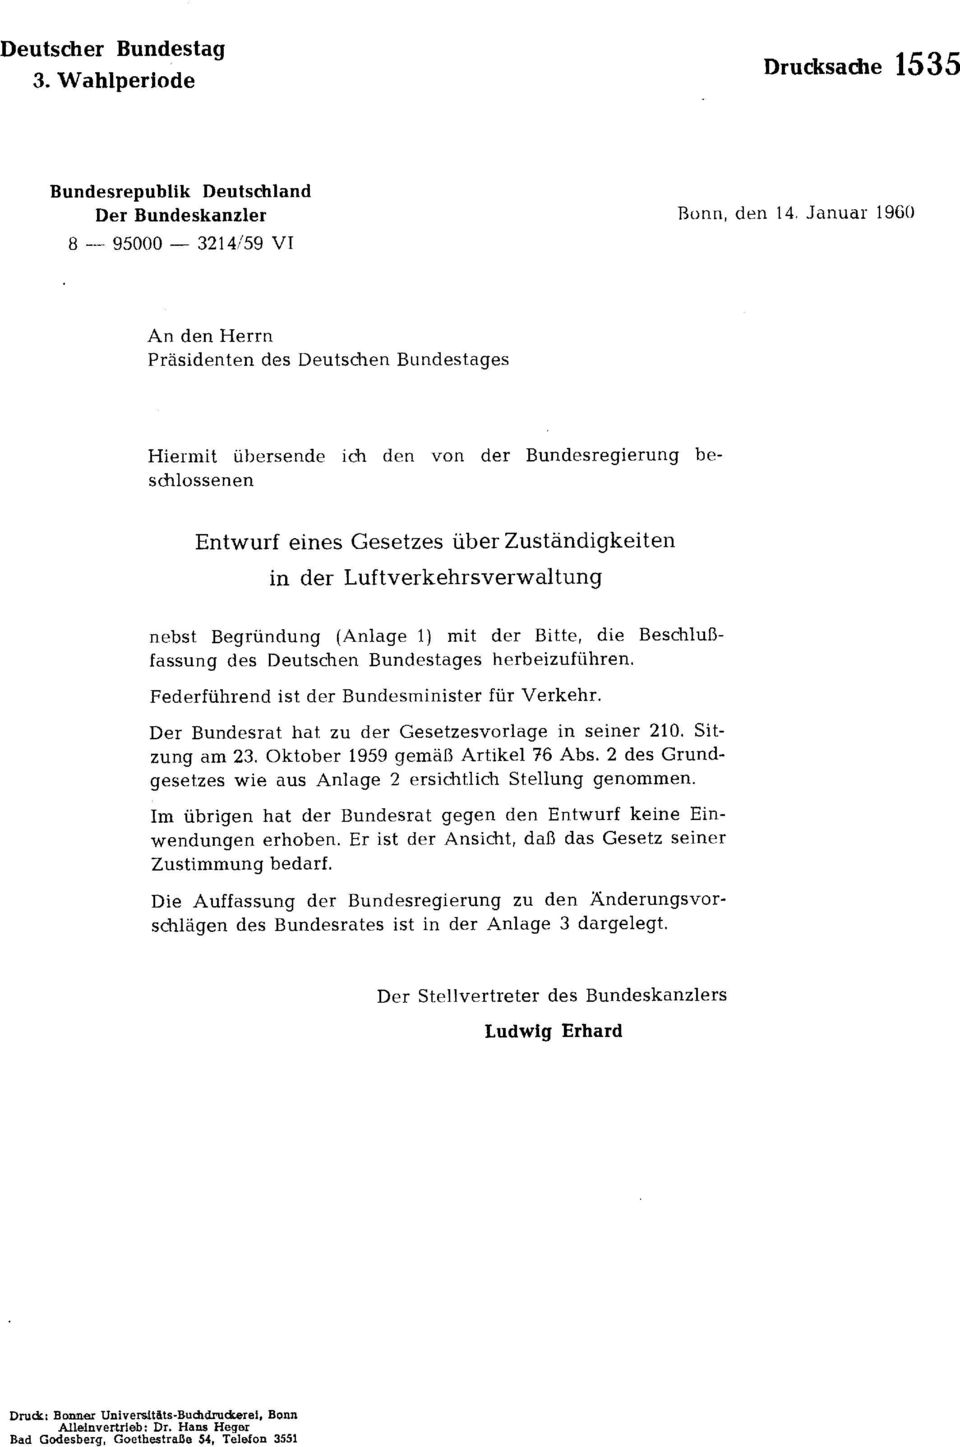 Luftverkehrsverwaltung nebst Begründung (Anlage 1) mit der Bitte, die Beschlußfassung des Deutschen Bundestages herbeizuführen. Federführend ist der Bundesminister für Verkehr.